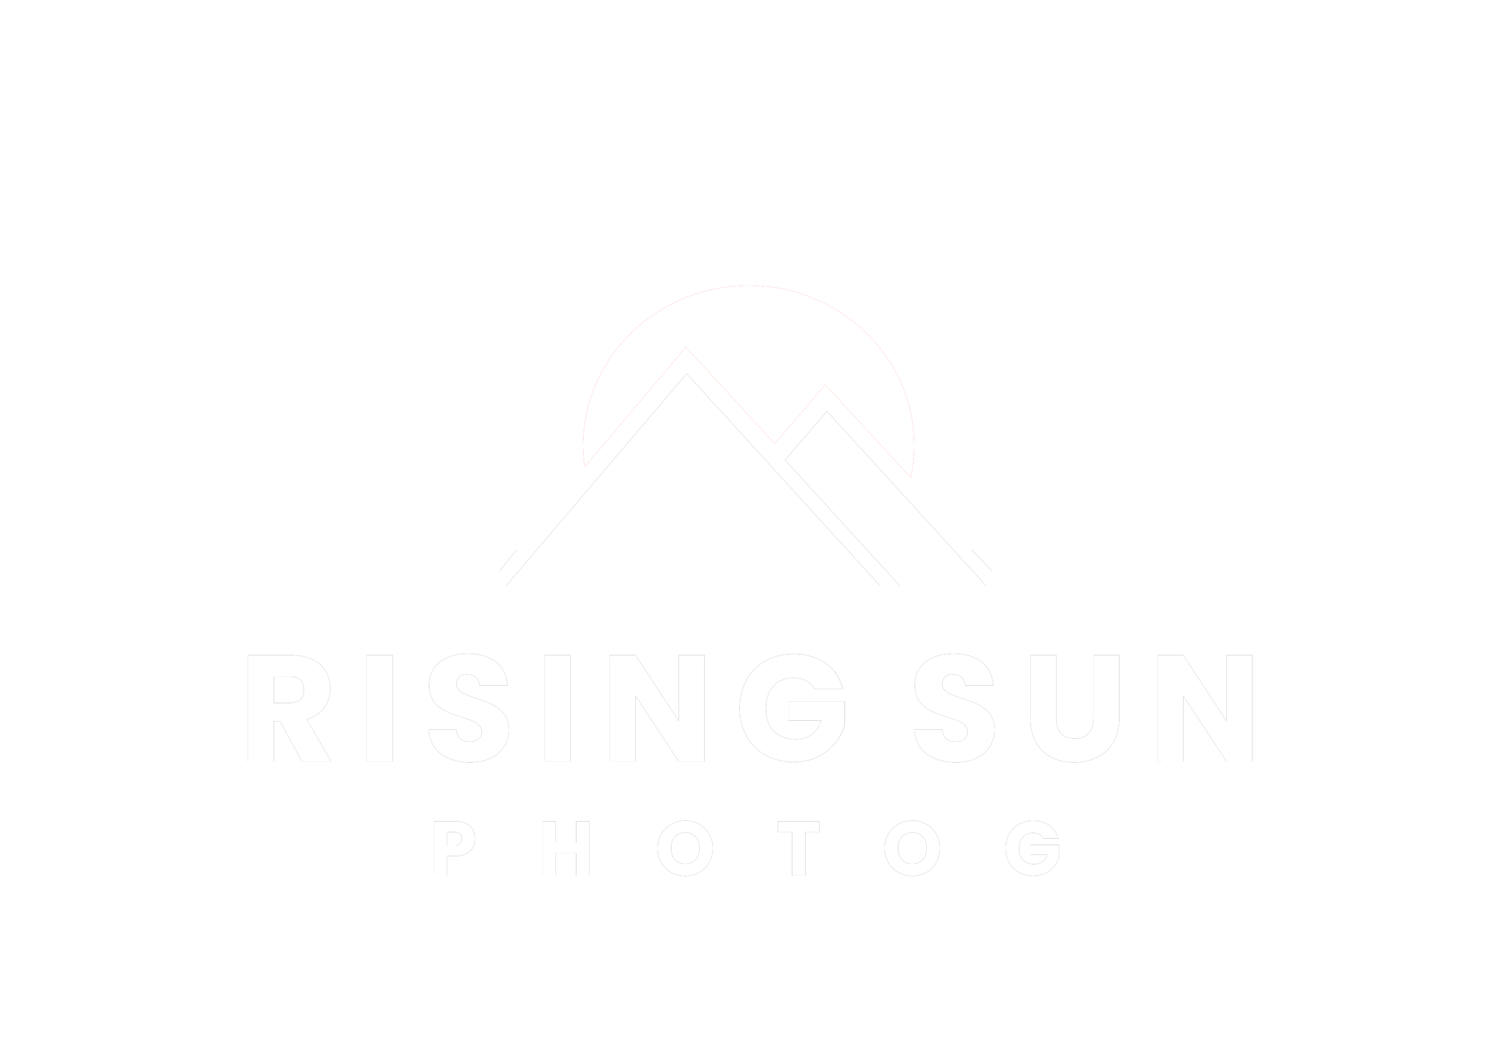  RIsing Sun Photog